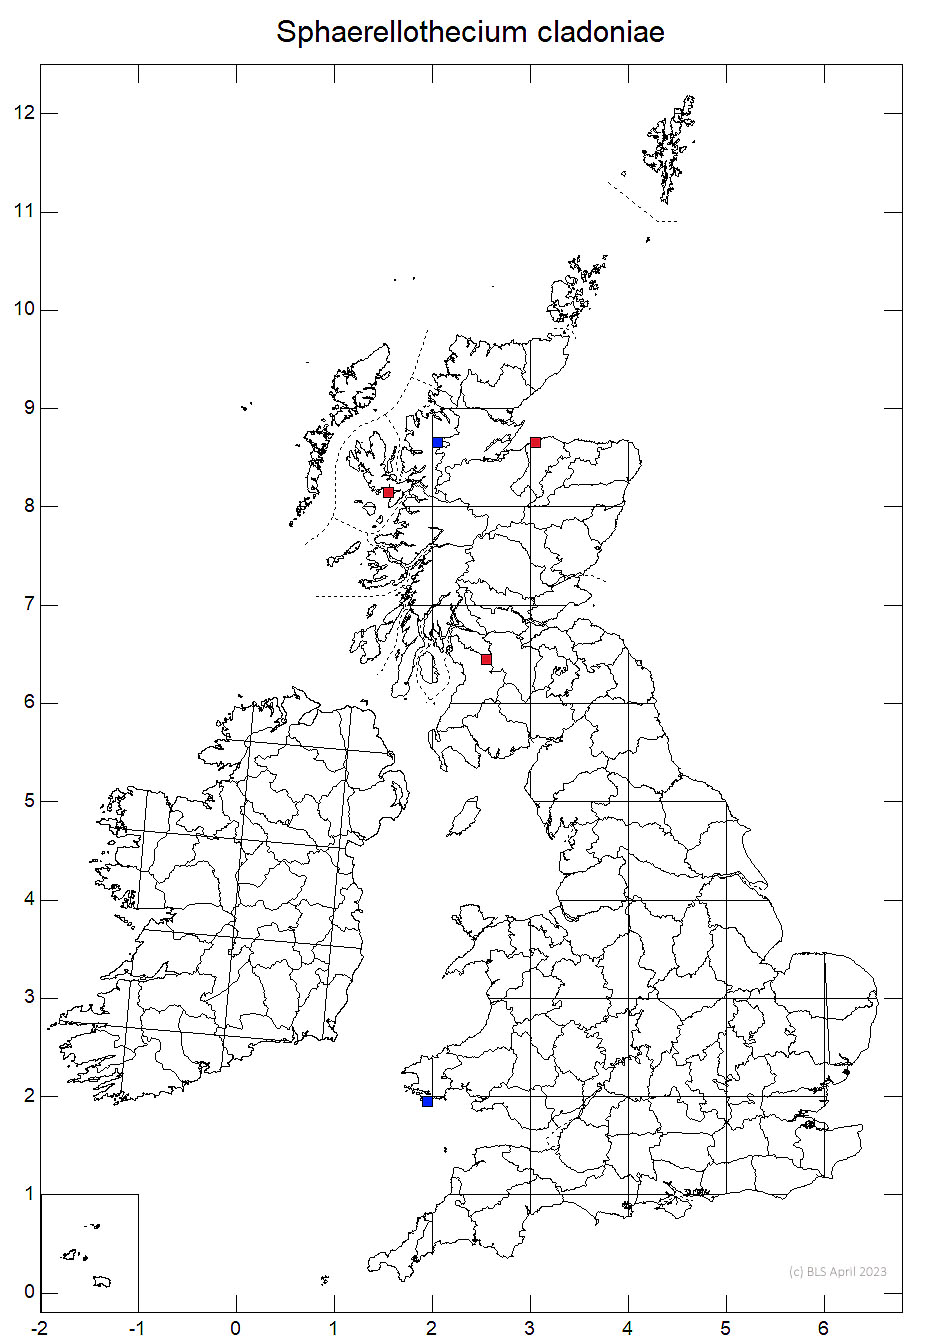 Sphaerellothecium cladoniae 10km sq distribution map